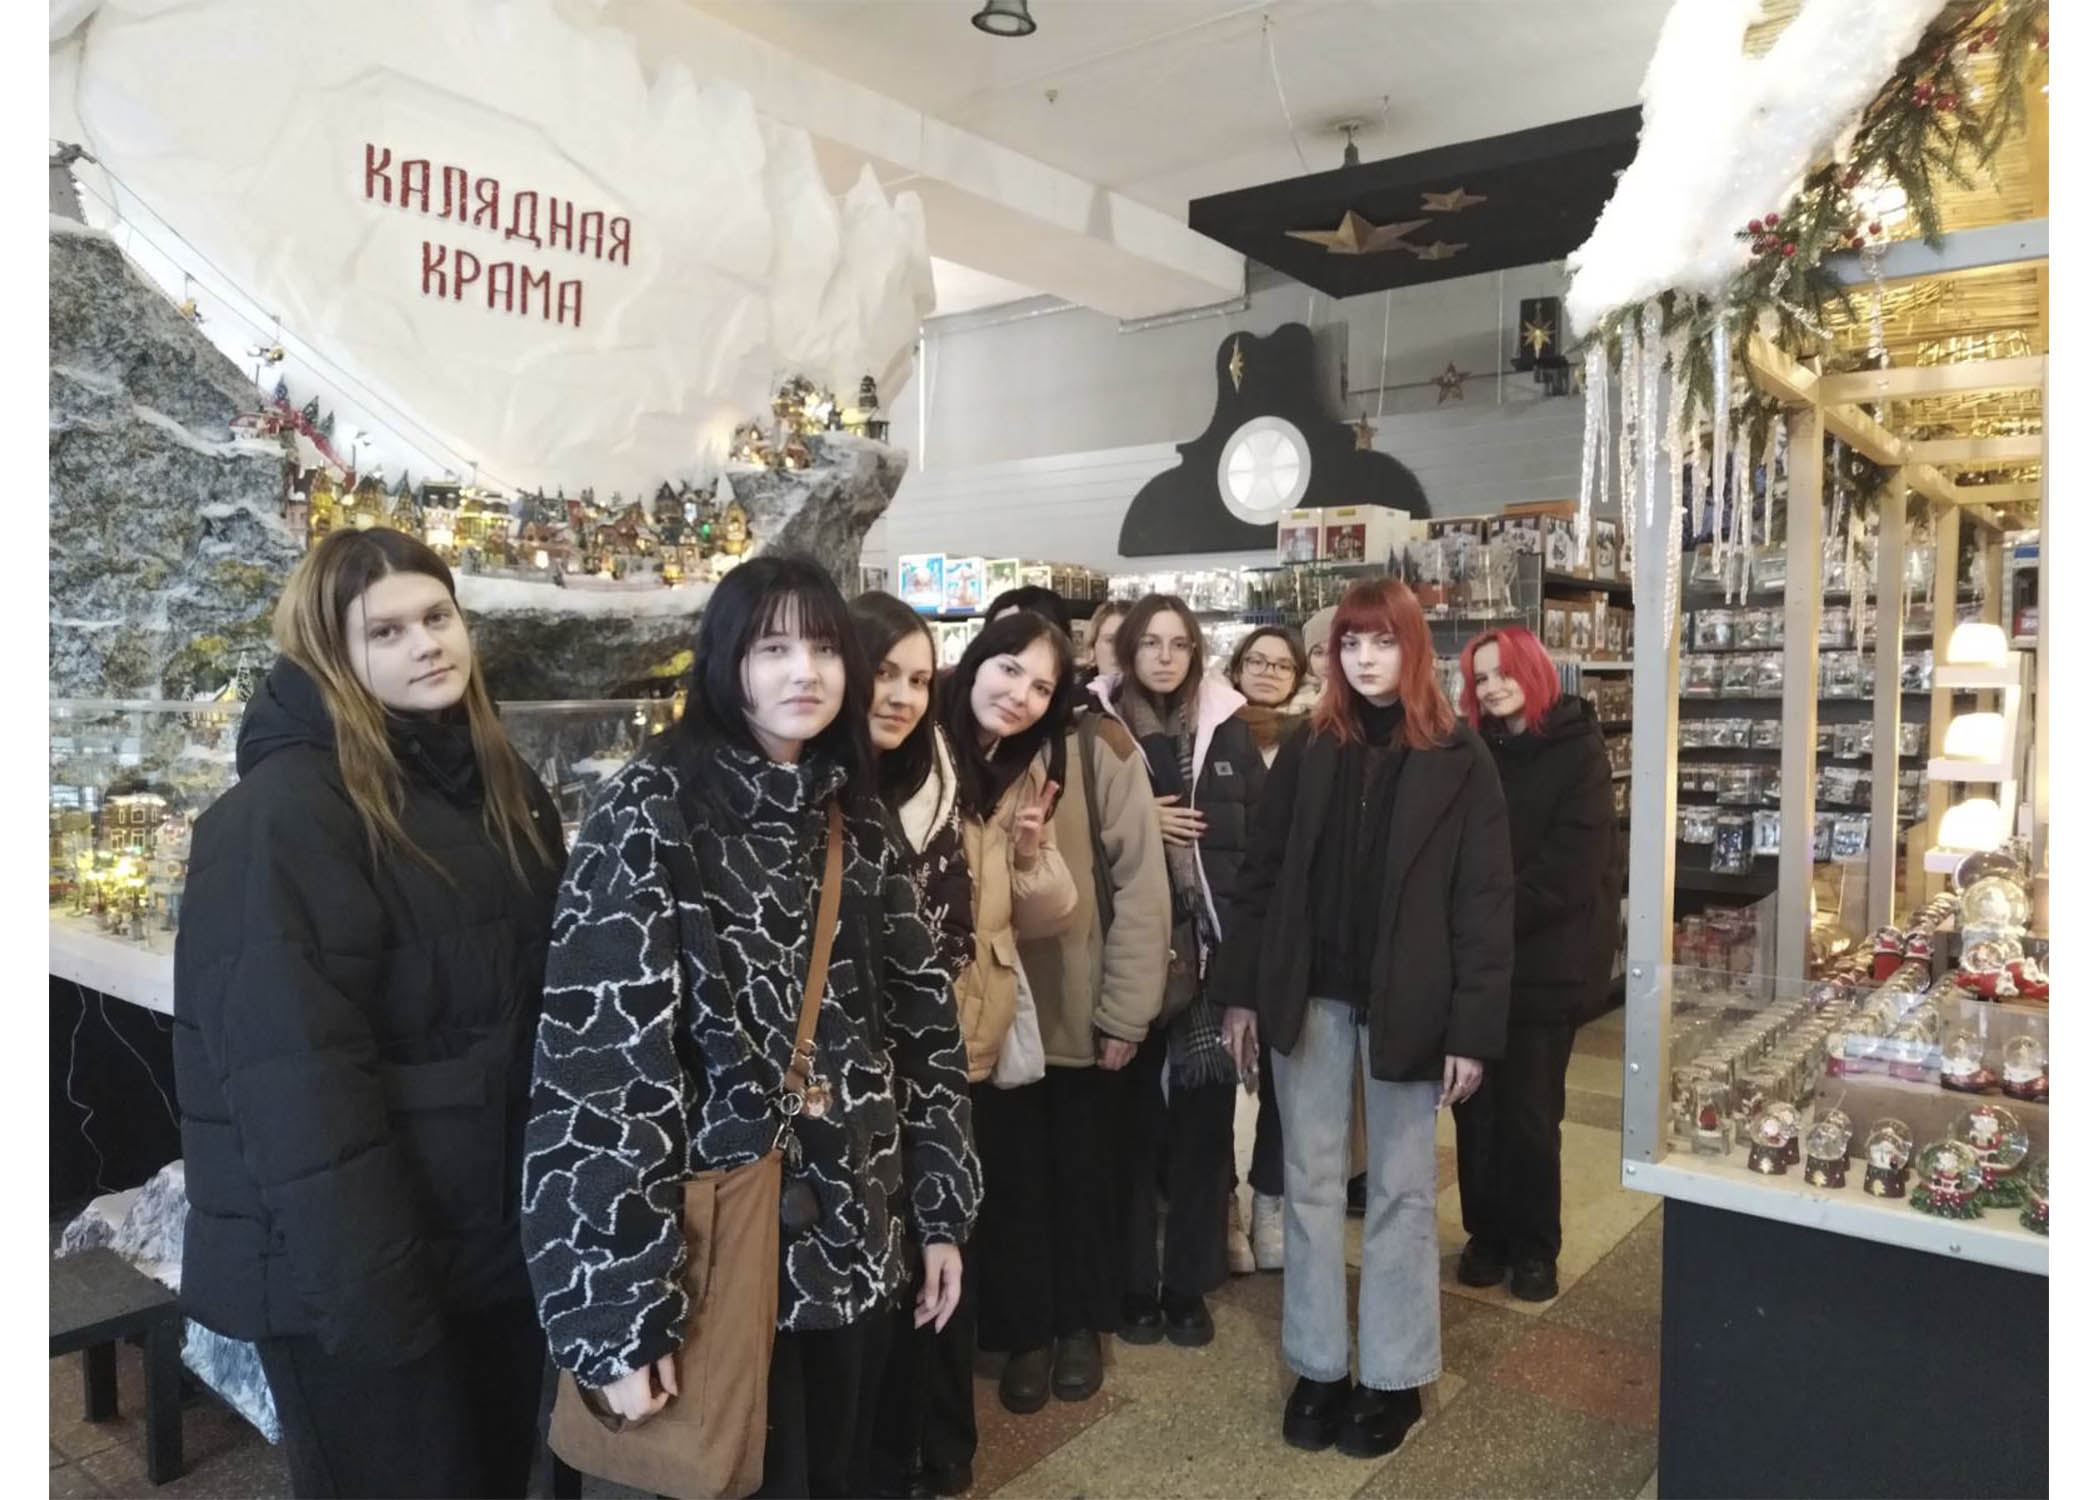 Учащиеся группы 29 посетили магазин "Калядная крама. Мануфактура" и окунулись в атмосферу Рождества и Нового года.